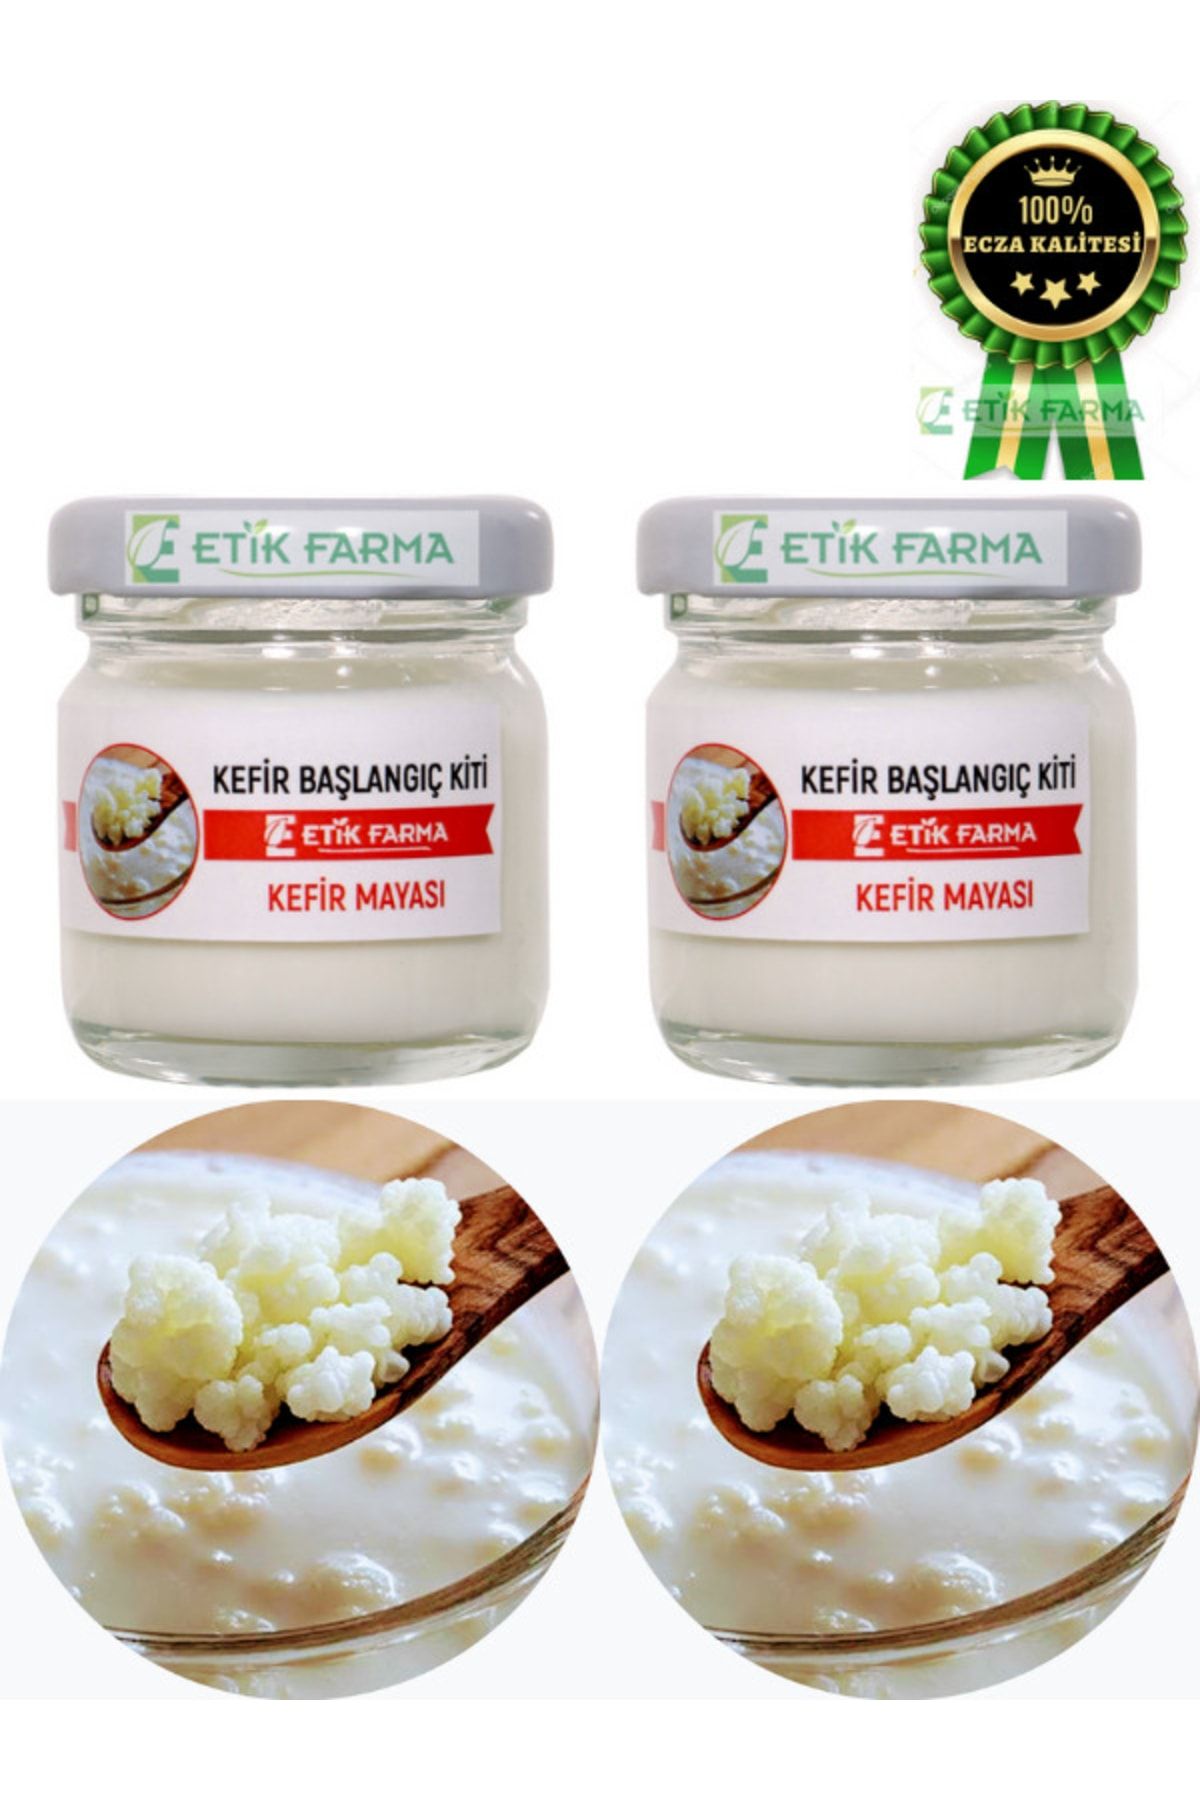 ETİK-FARMA Özel Üretim Organik Kafkas Süt Kefir Mayası 2 Adet [ Canlı Kefir Taneleri ]